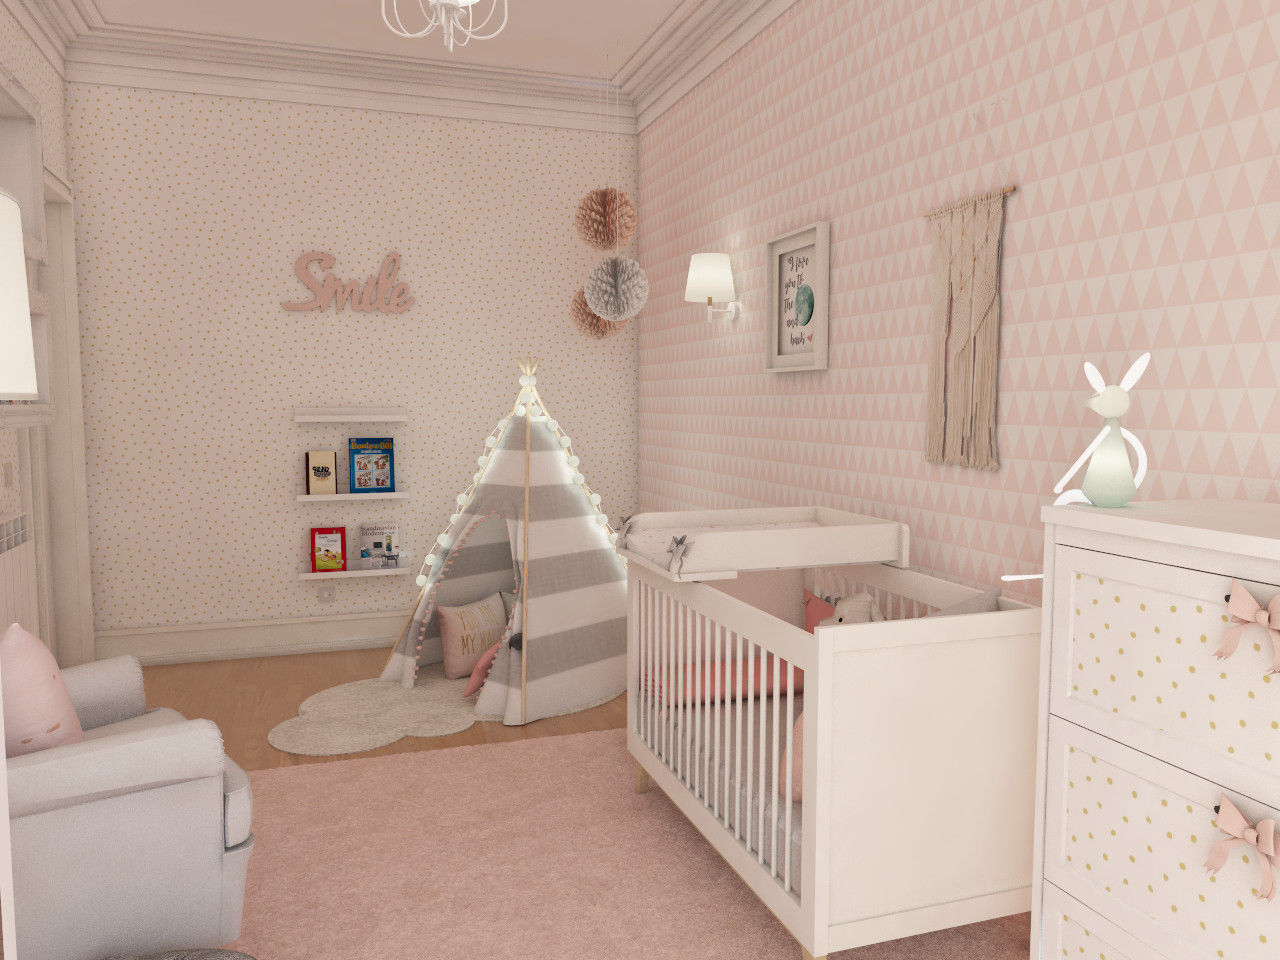 Simulação tridimensional - projecto quarto de bebé The Spacealist - Arquitectura e Interiores Berçários quarto de criança,berçário,nursery,bebé,rosa,cinza,papel de parede,teepee